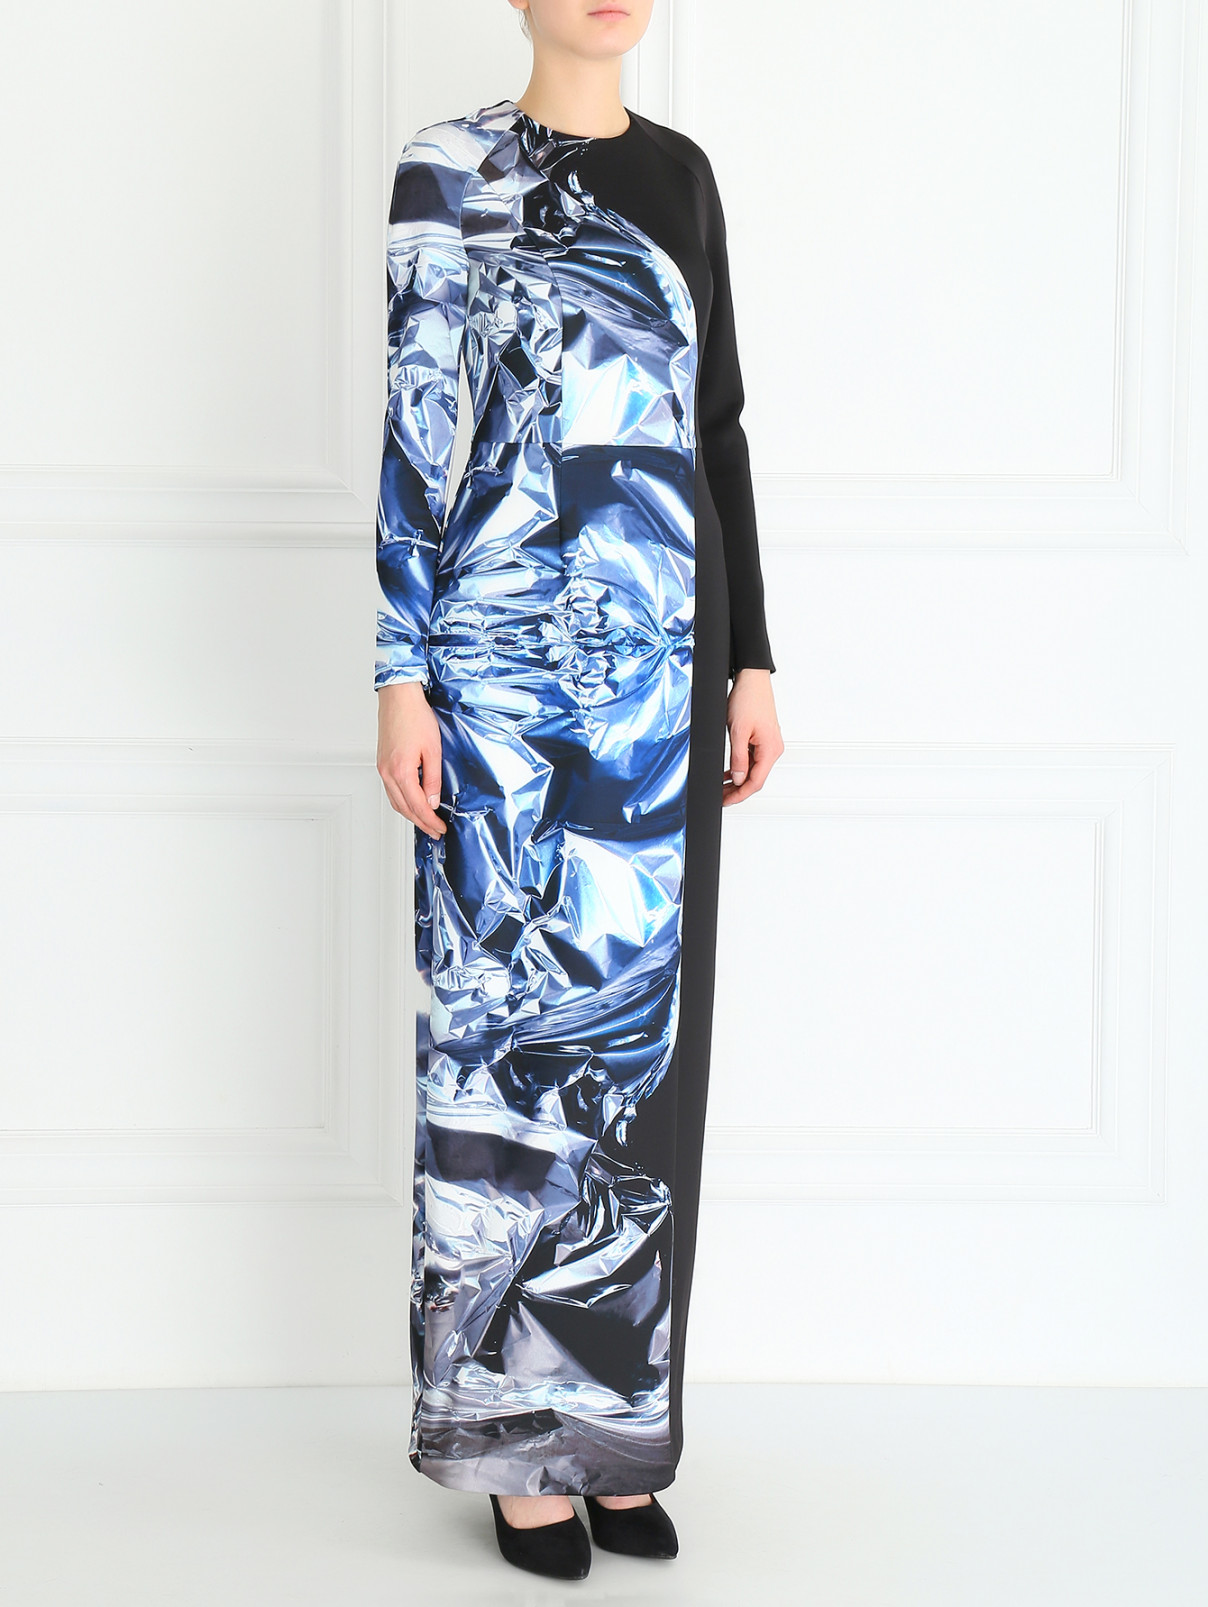 Платье-макси с принтом Kira Plastinina  –  Модель Общий вид  – Цвет:  Черный